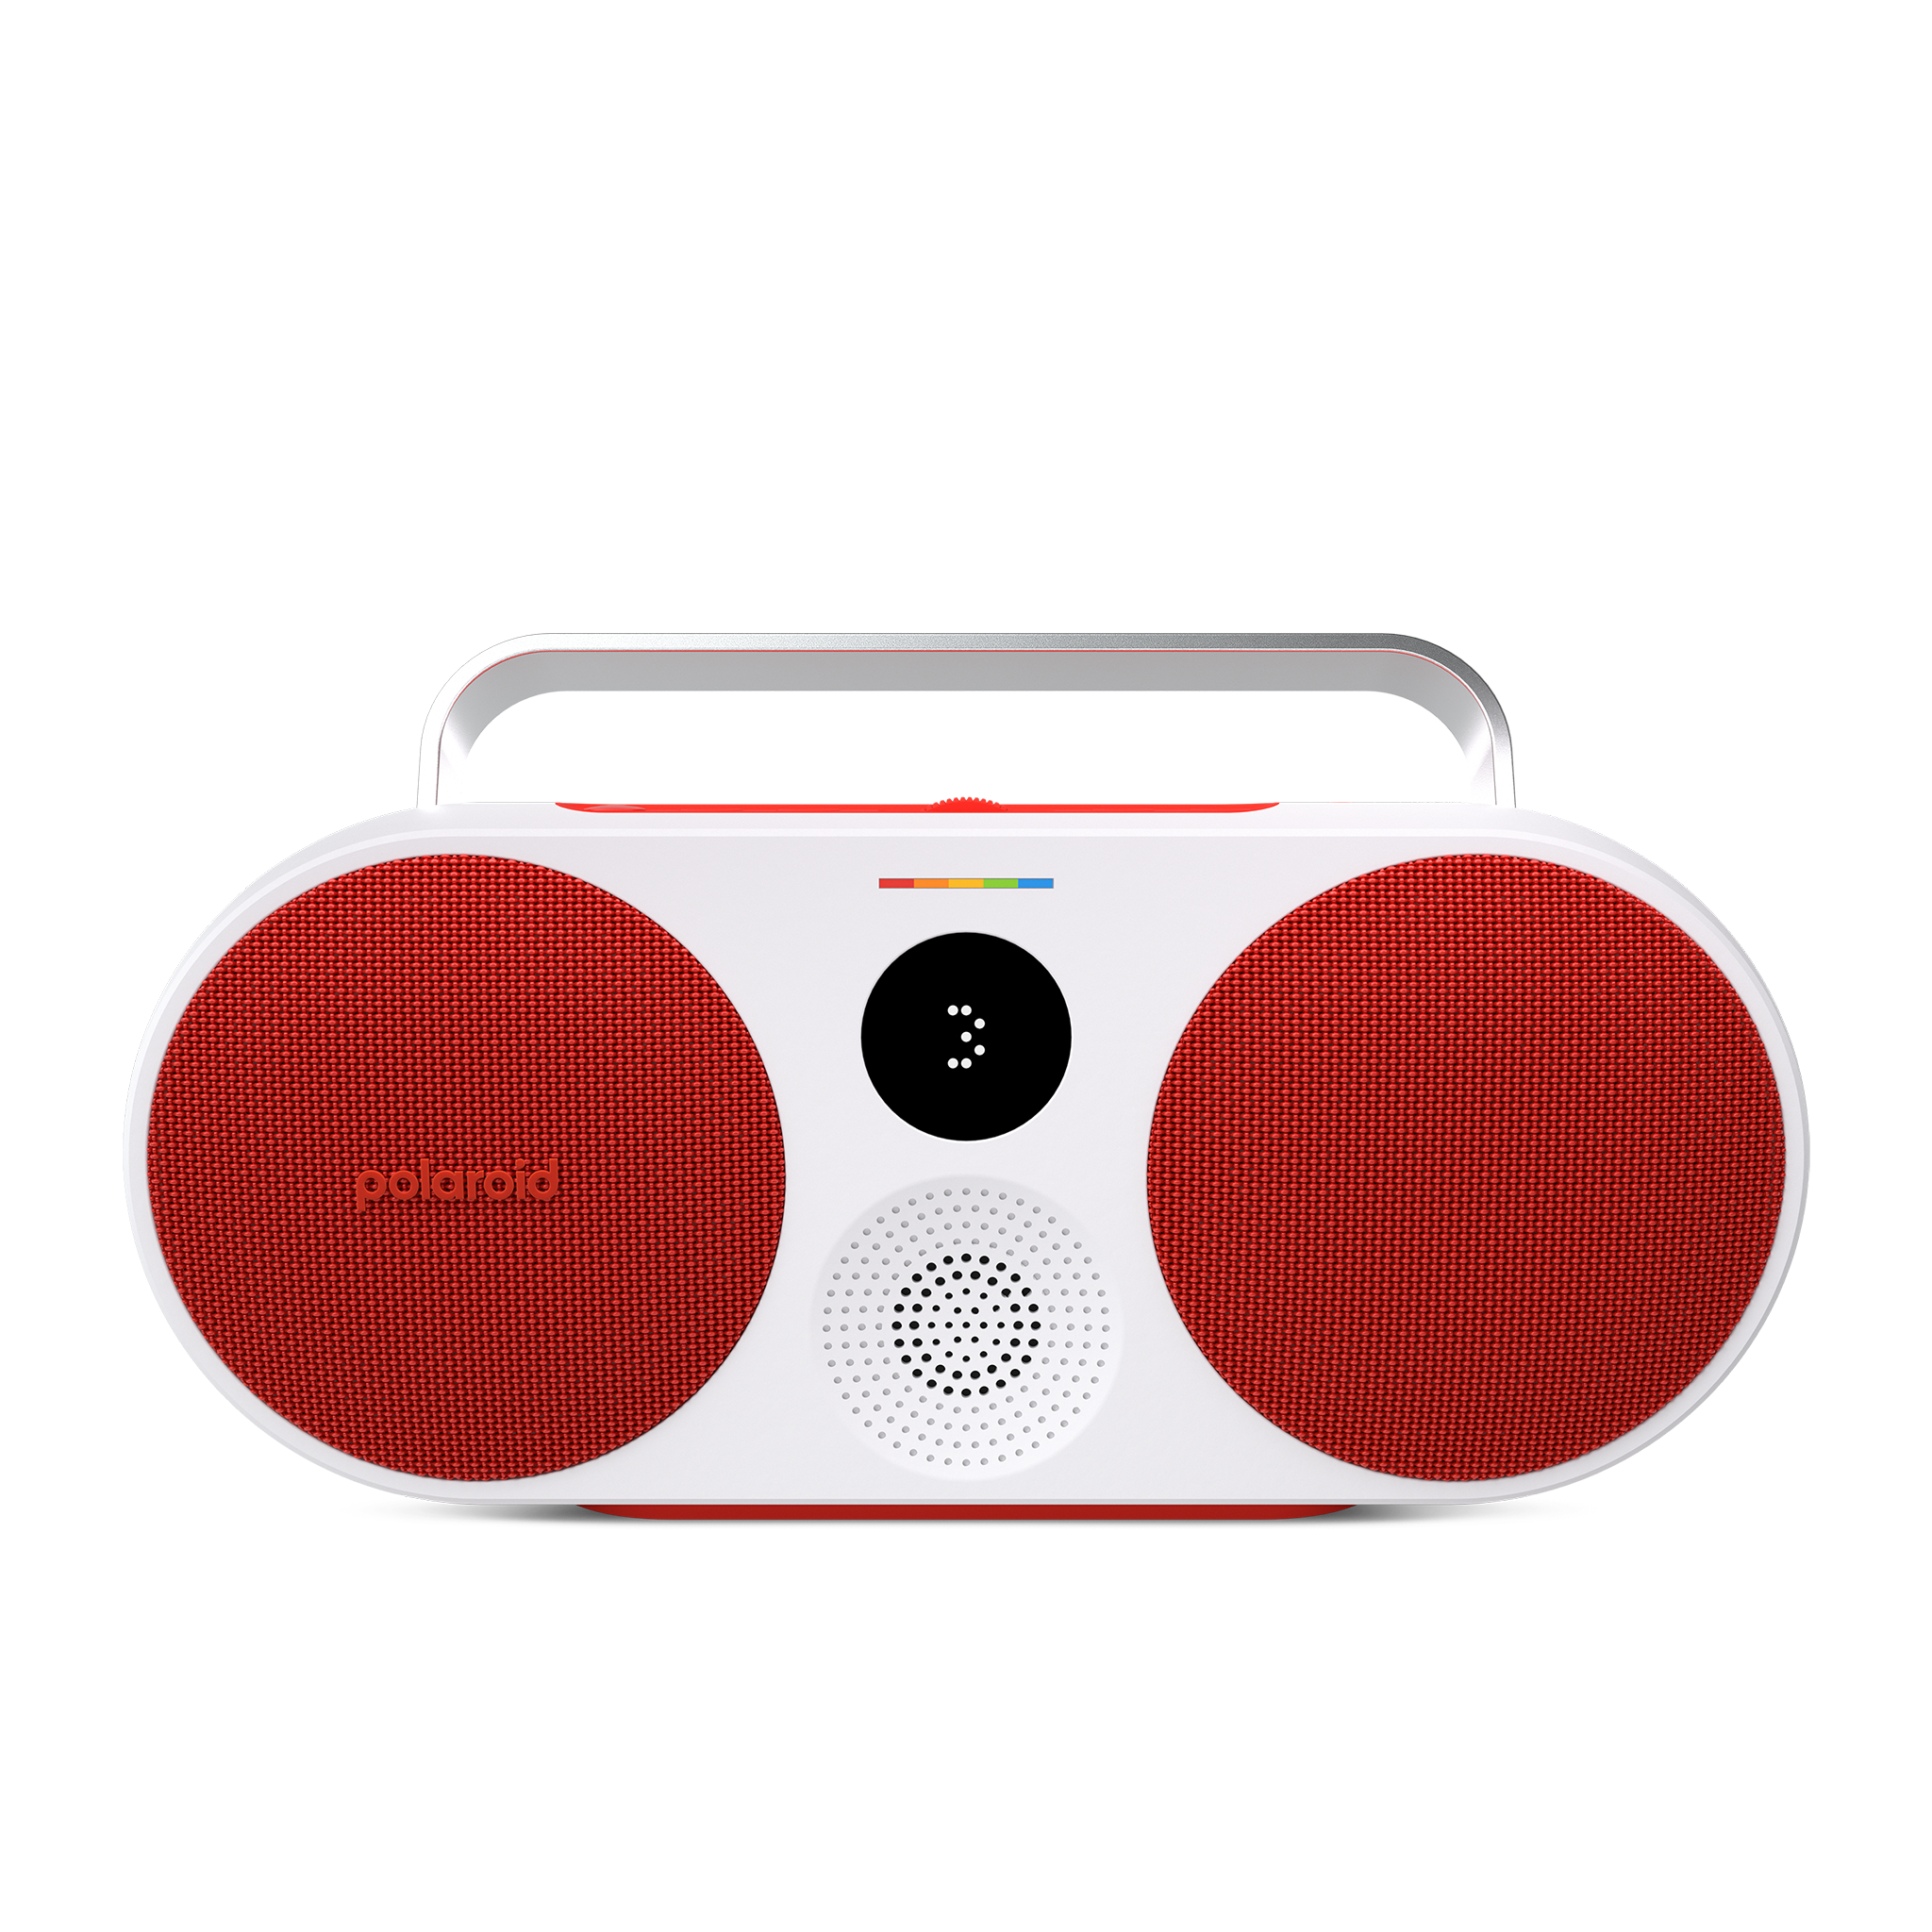 P1S Polaroid : Standby - MP3 - 1200mAh